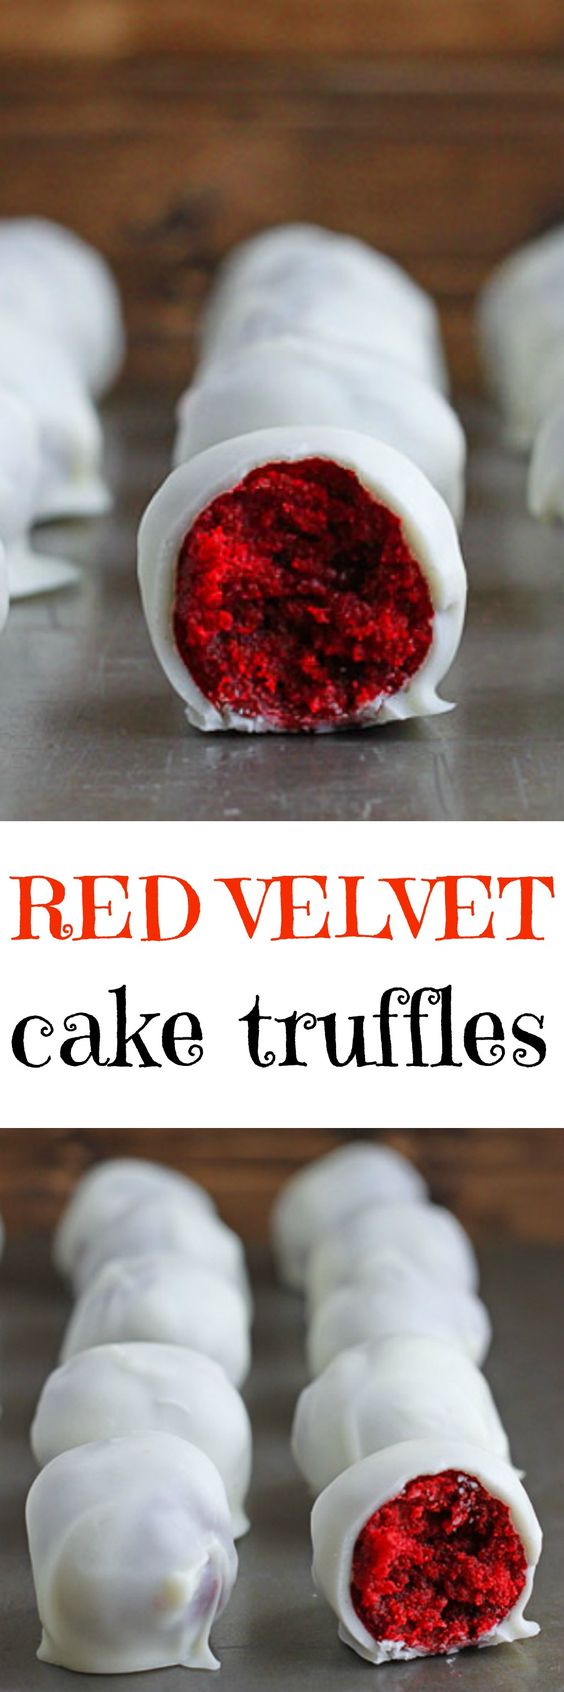 Red Velvet Cake for Christmas. Try delicious DIY cake recipes for Christmas. 